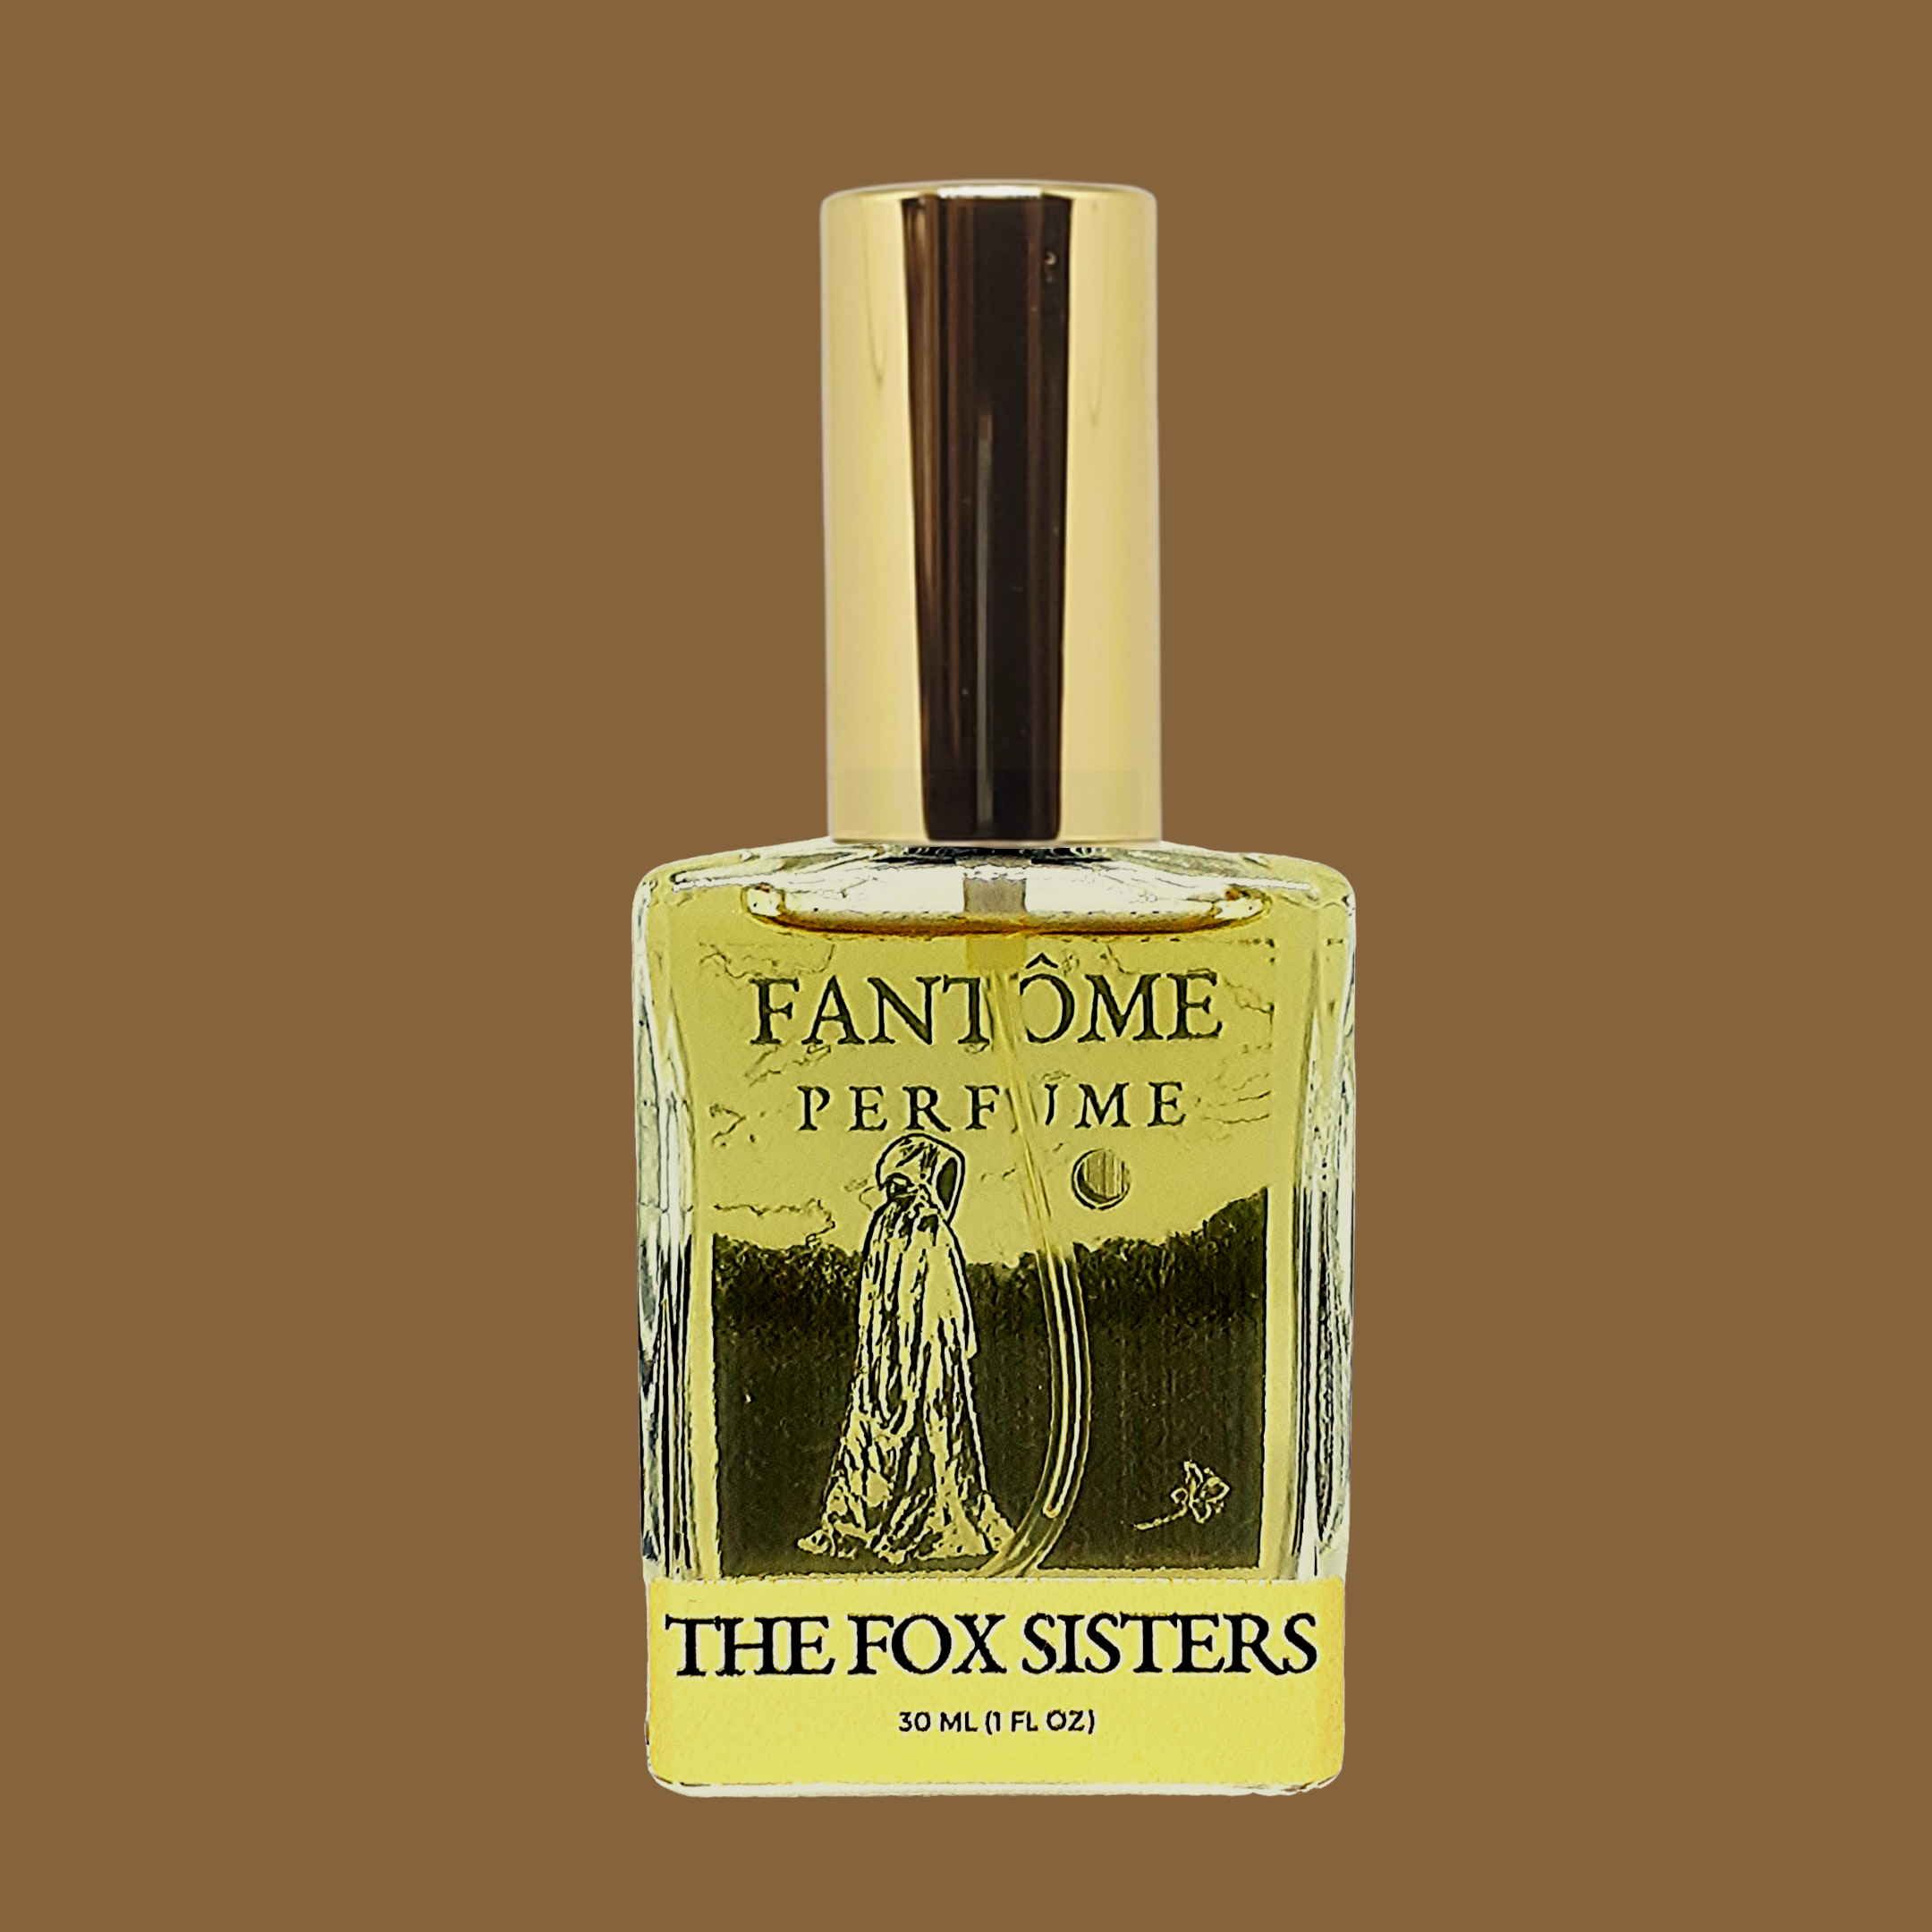 The Fox Sisters Extrait de Parfum